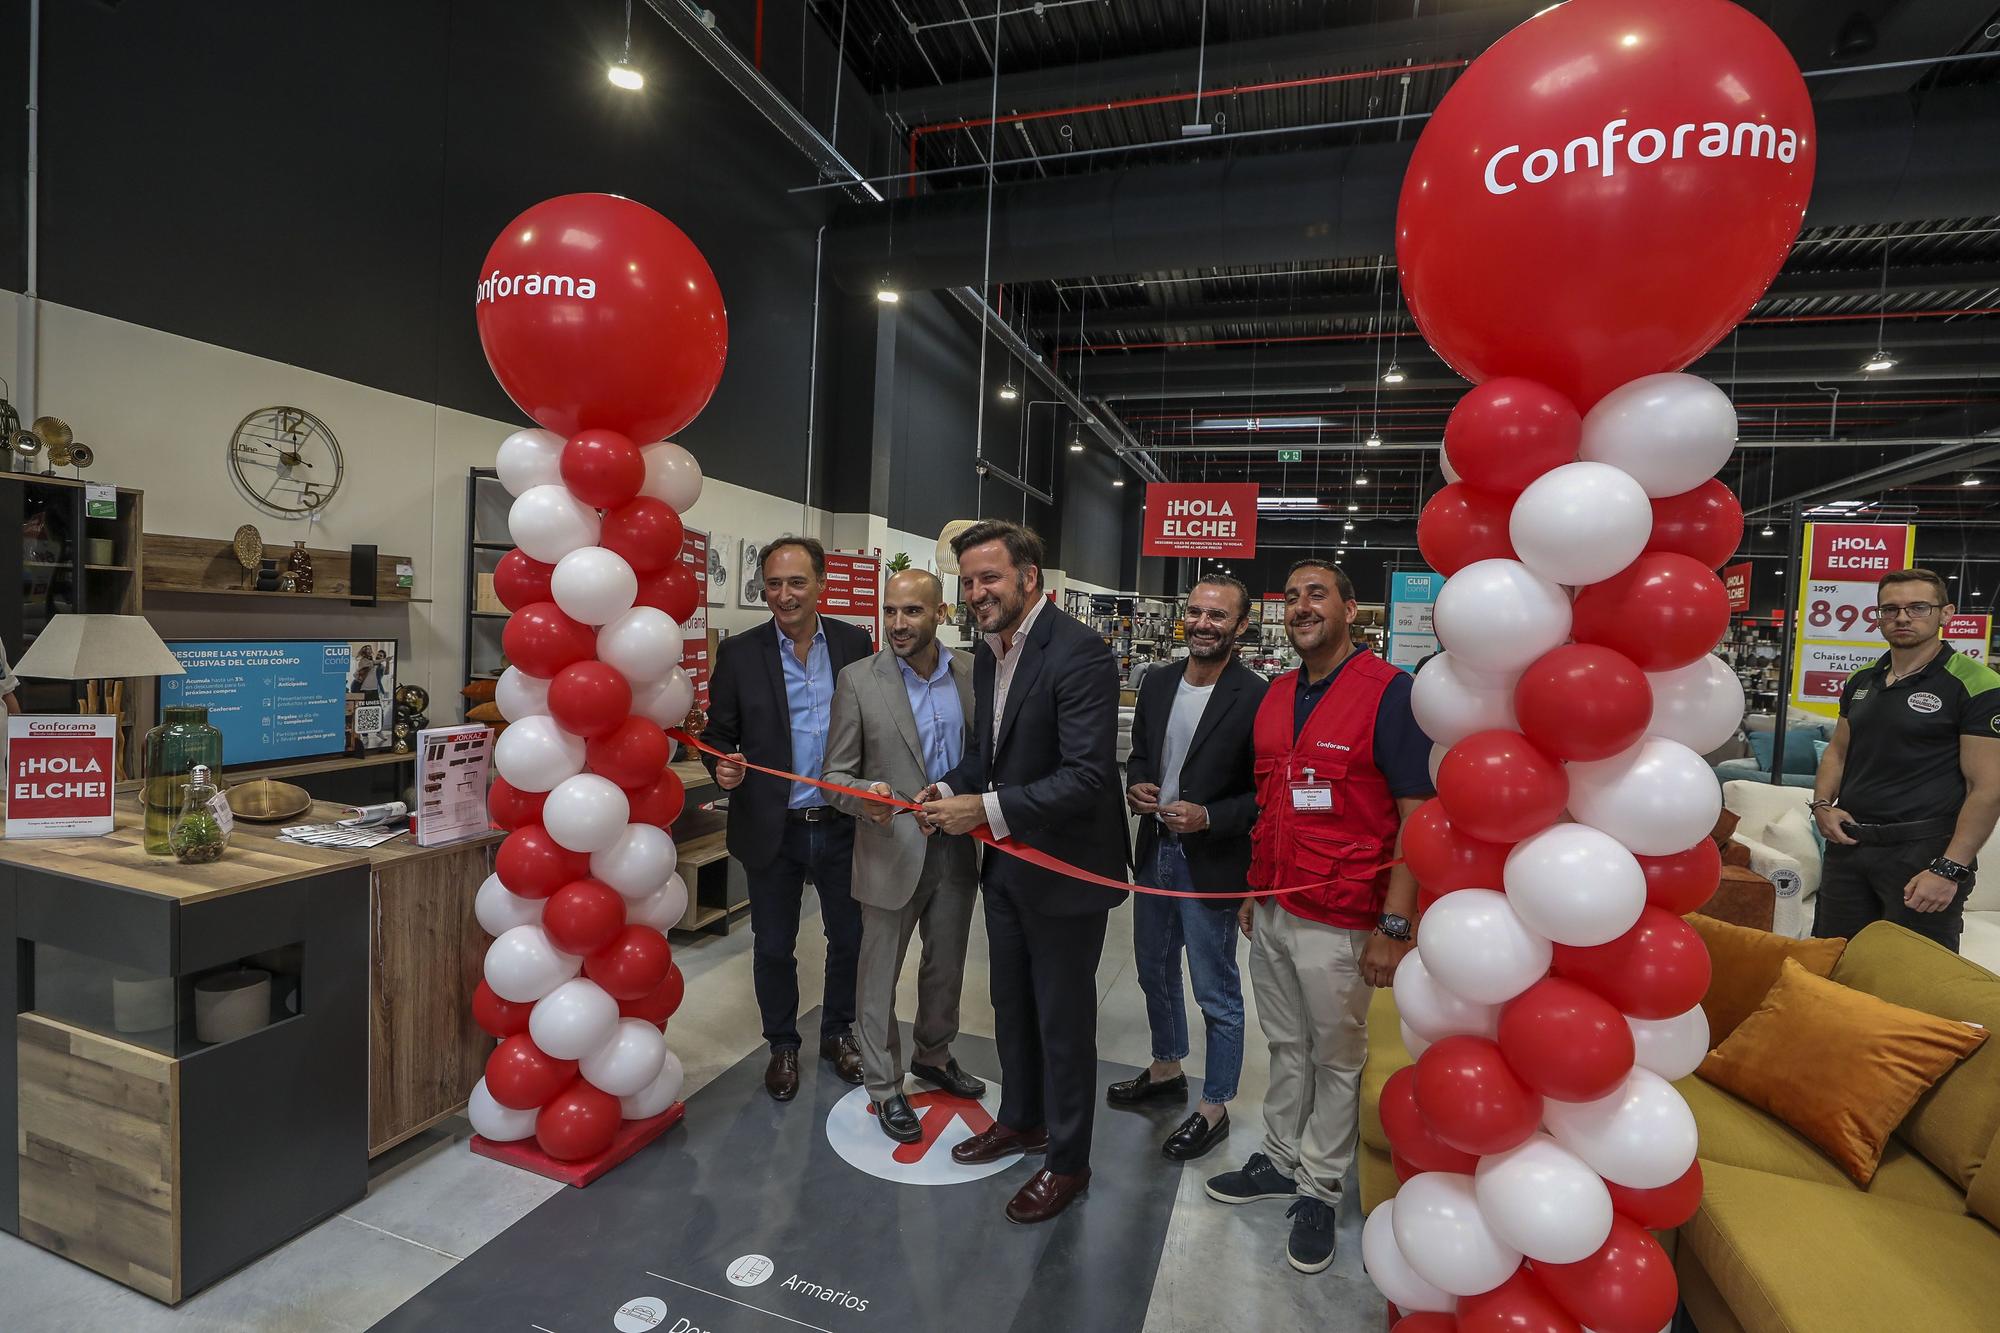 Gran inauguración de la nueva tienda de Conforama en Elche.